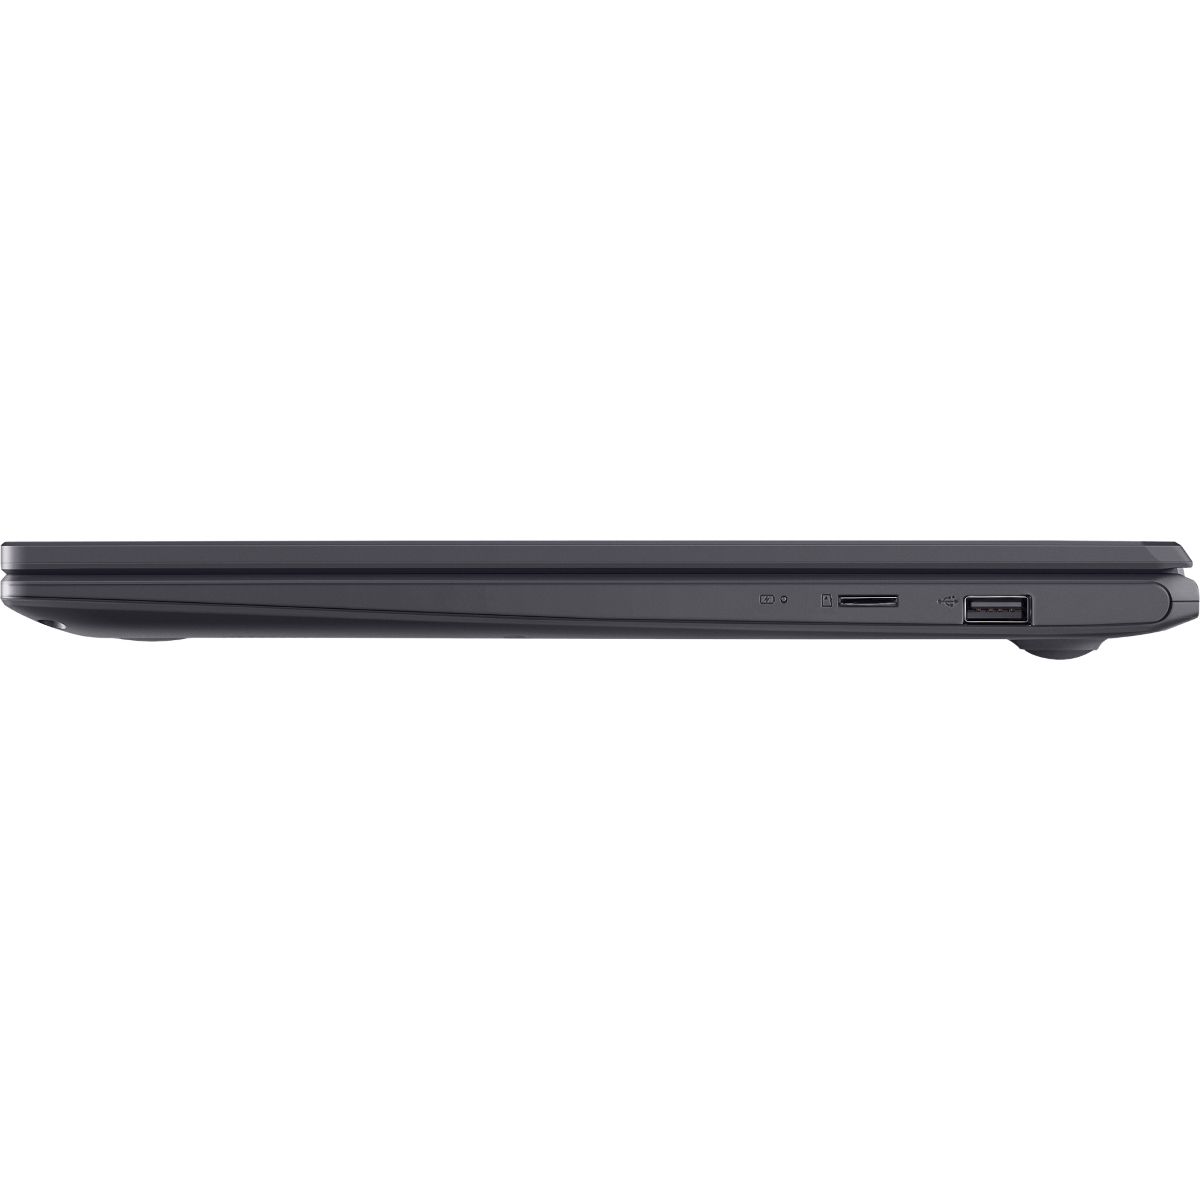 ASUS Laptop E510MA-EJ040TS 15.6" HD Intel Celeron 4GB RAM 64GB eMMC